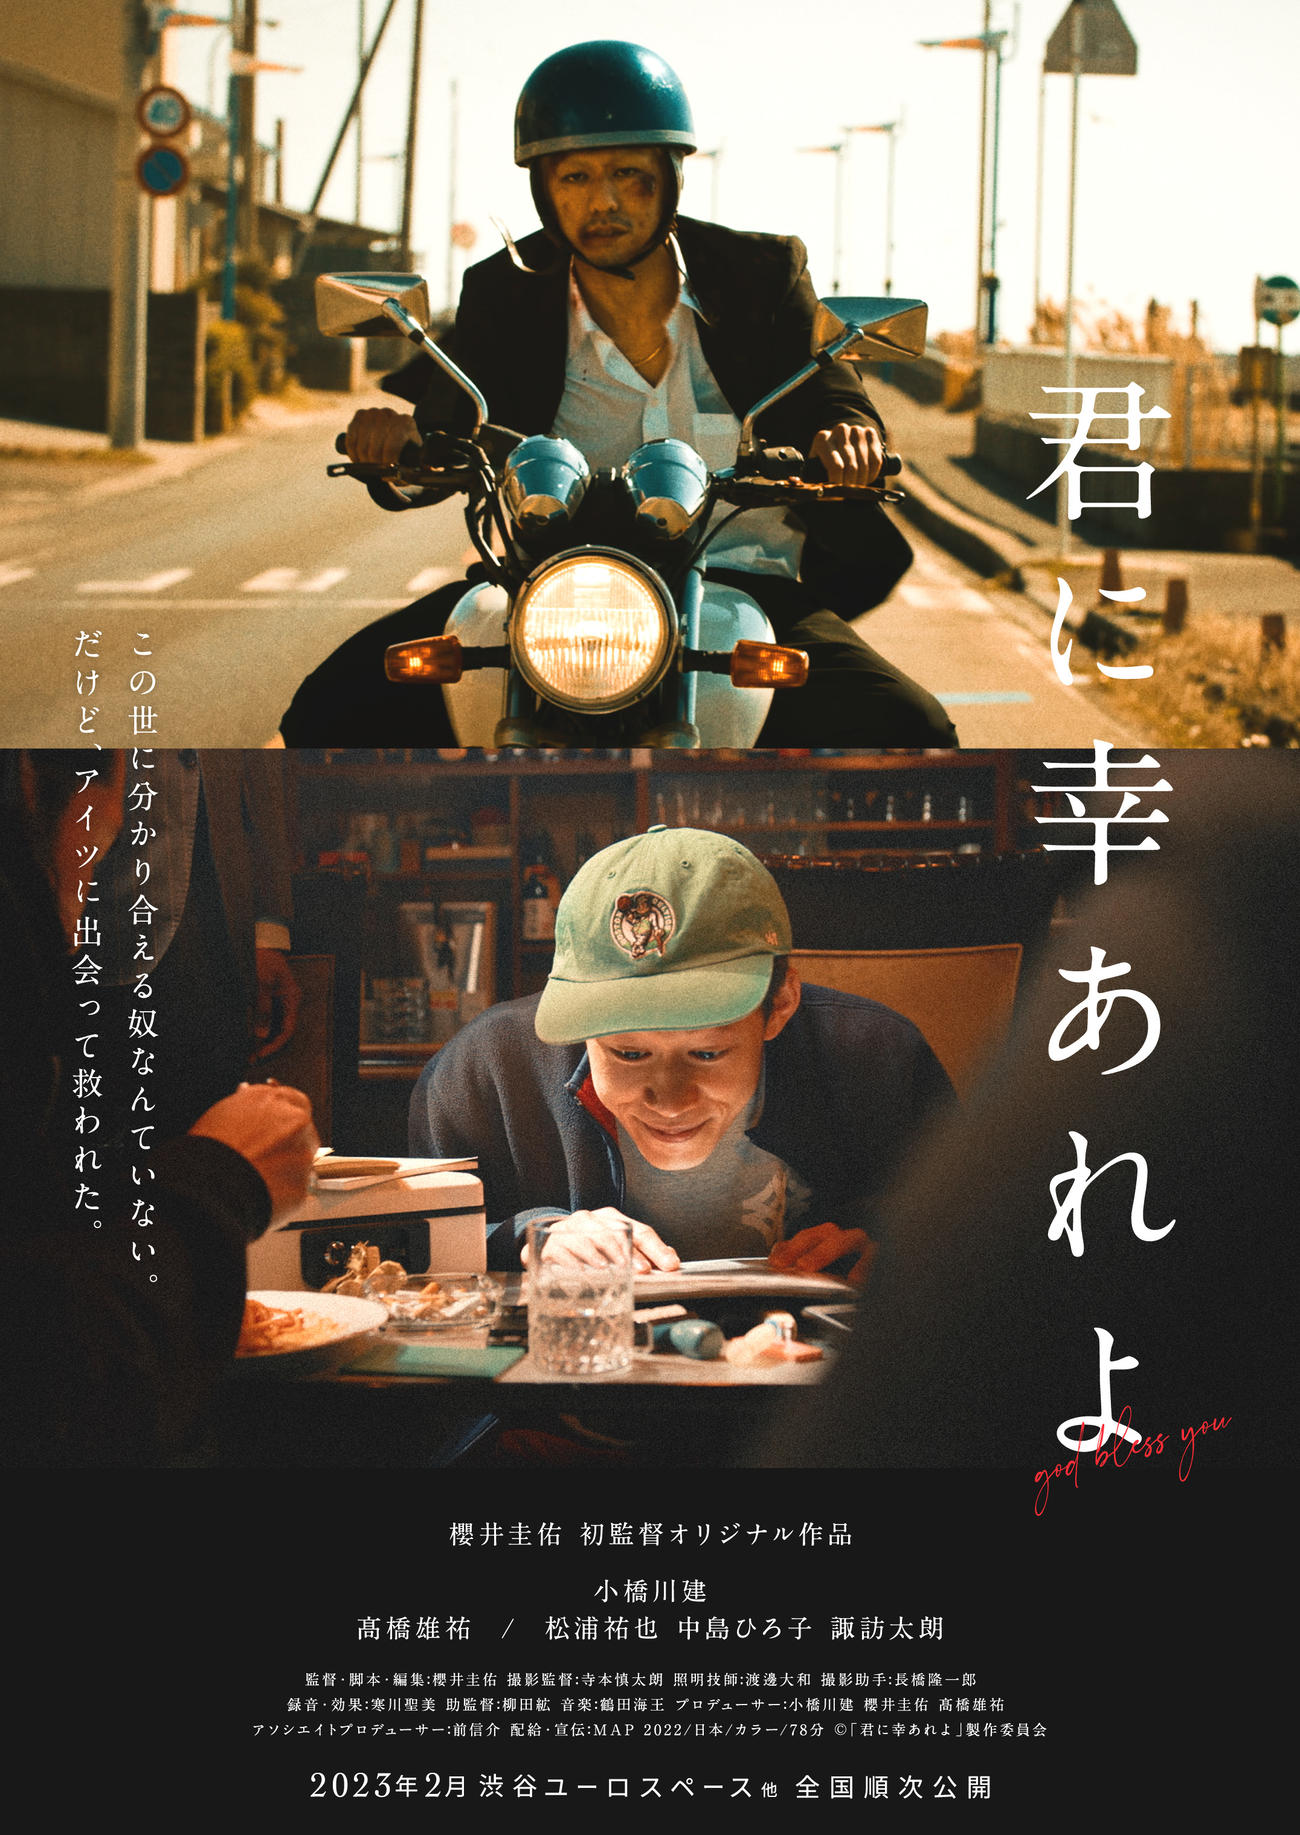 櫻井圭佑が初めて監督・脚本を務める映画「君に幸あれよ」